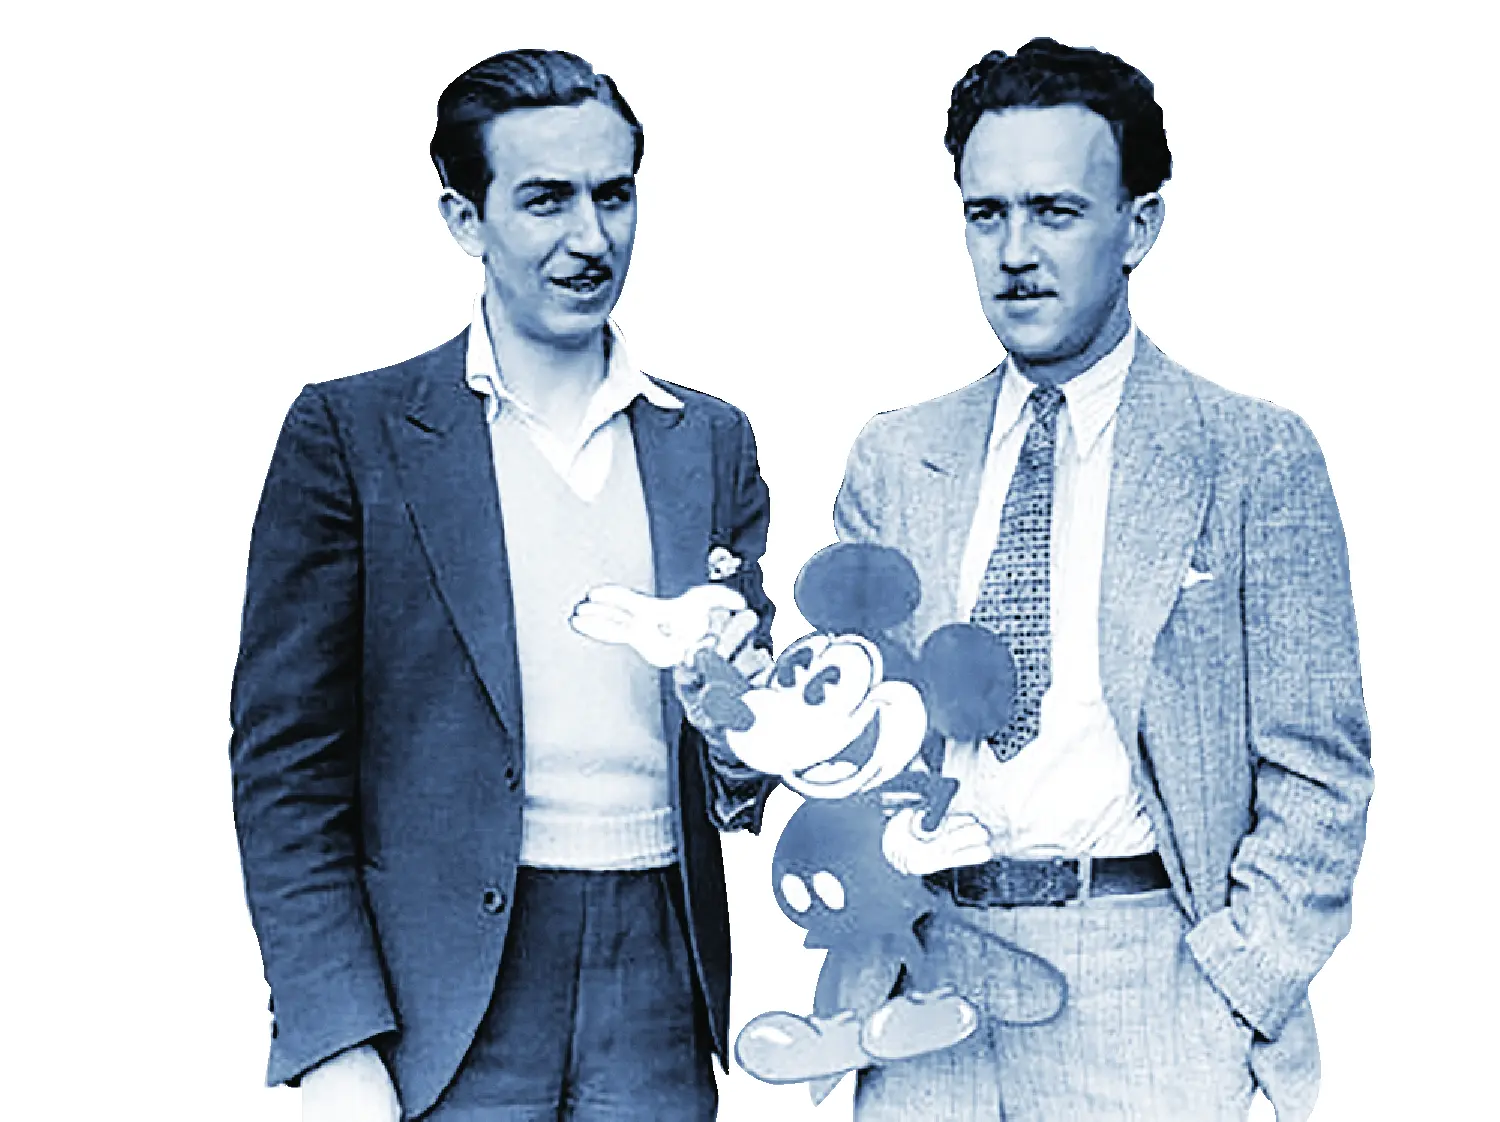 Walt Disney and Iwerks.